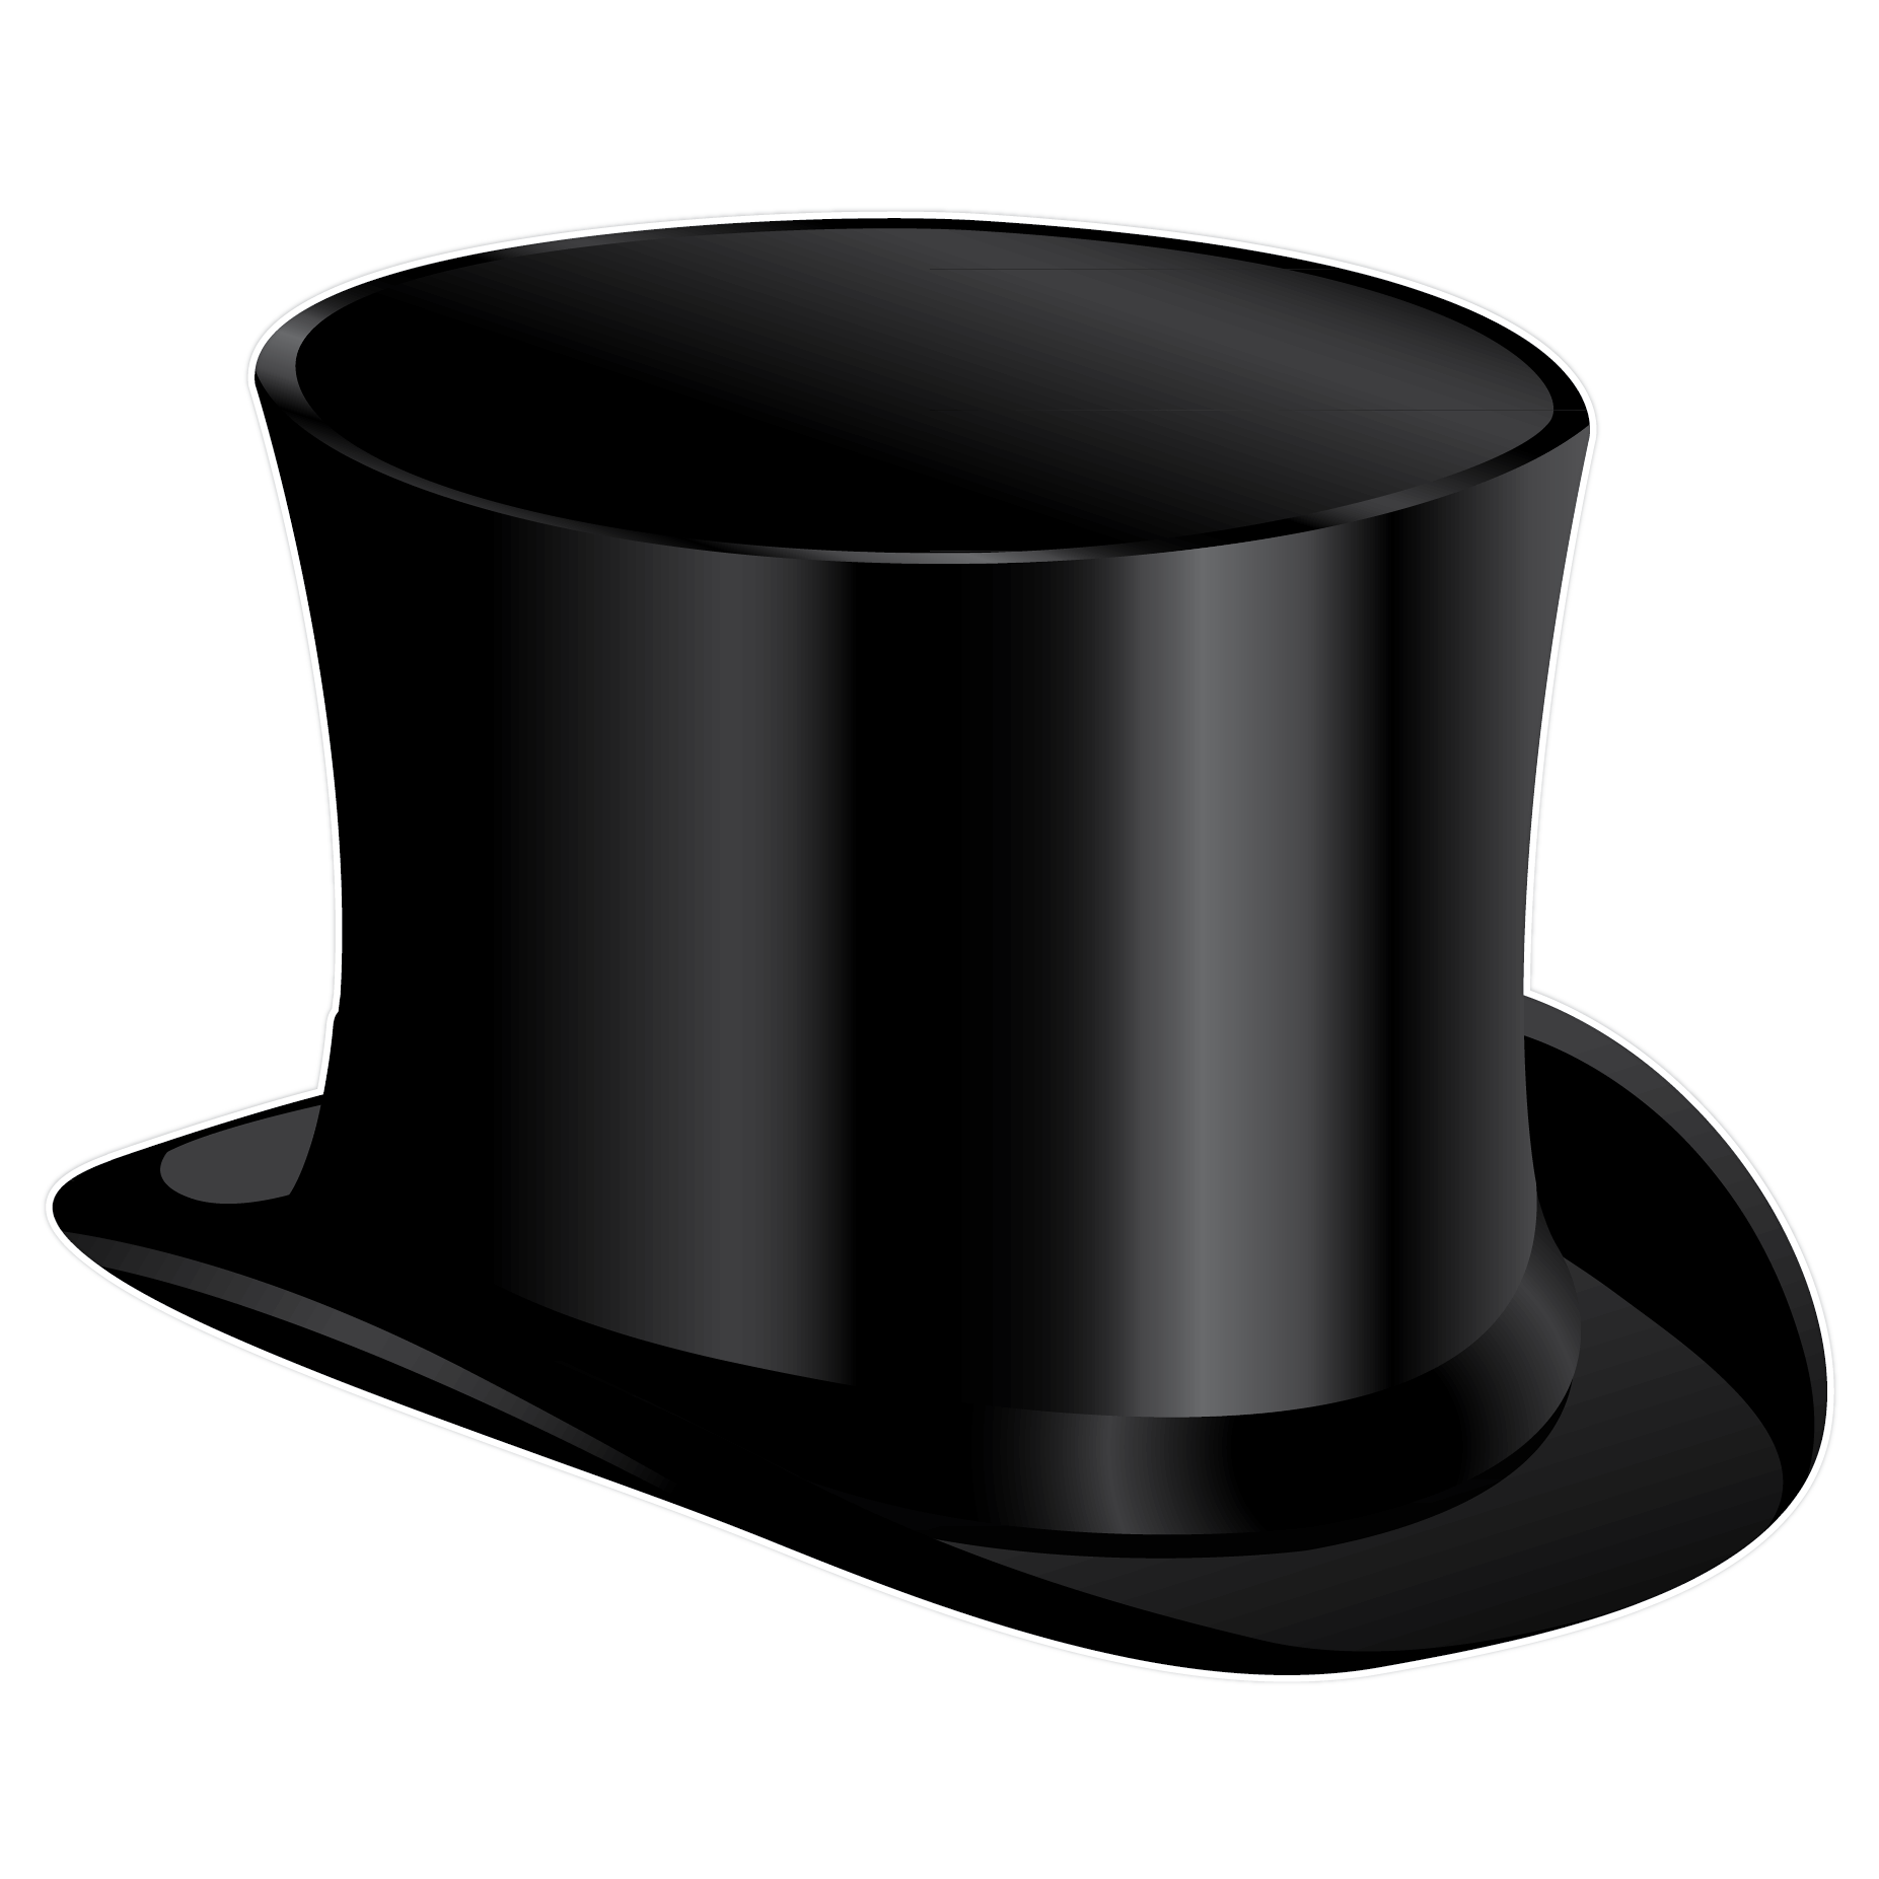 ... Black Top Hat illustratio